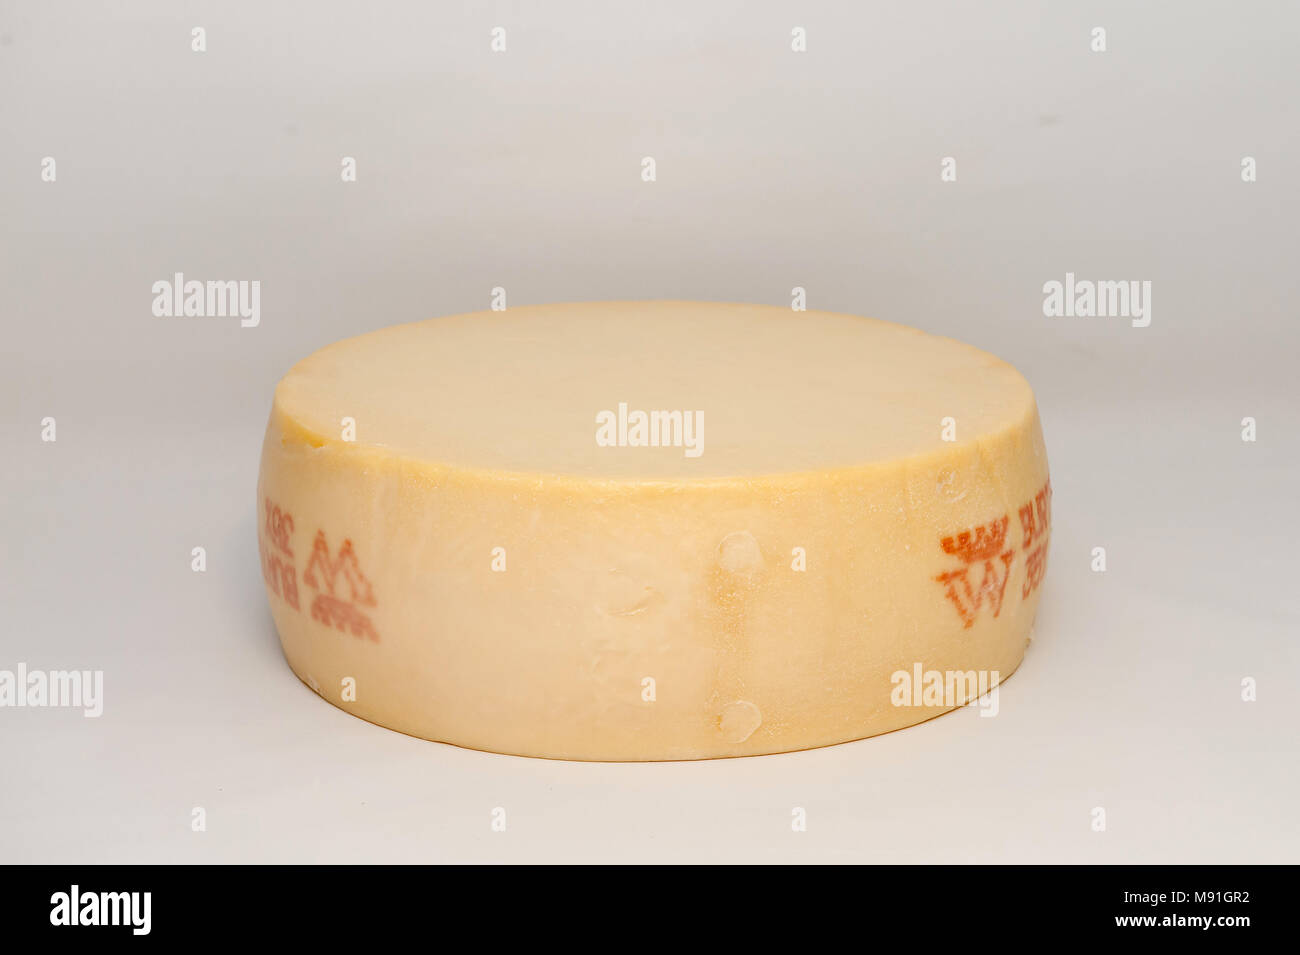 Vasterbottensost est un fromage à pâte dure de Burtrask en Suède Scandinavie Banque D'Images